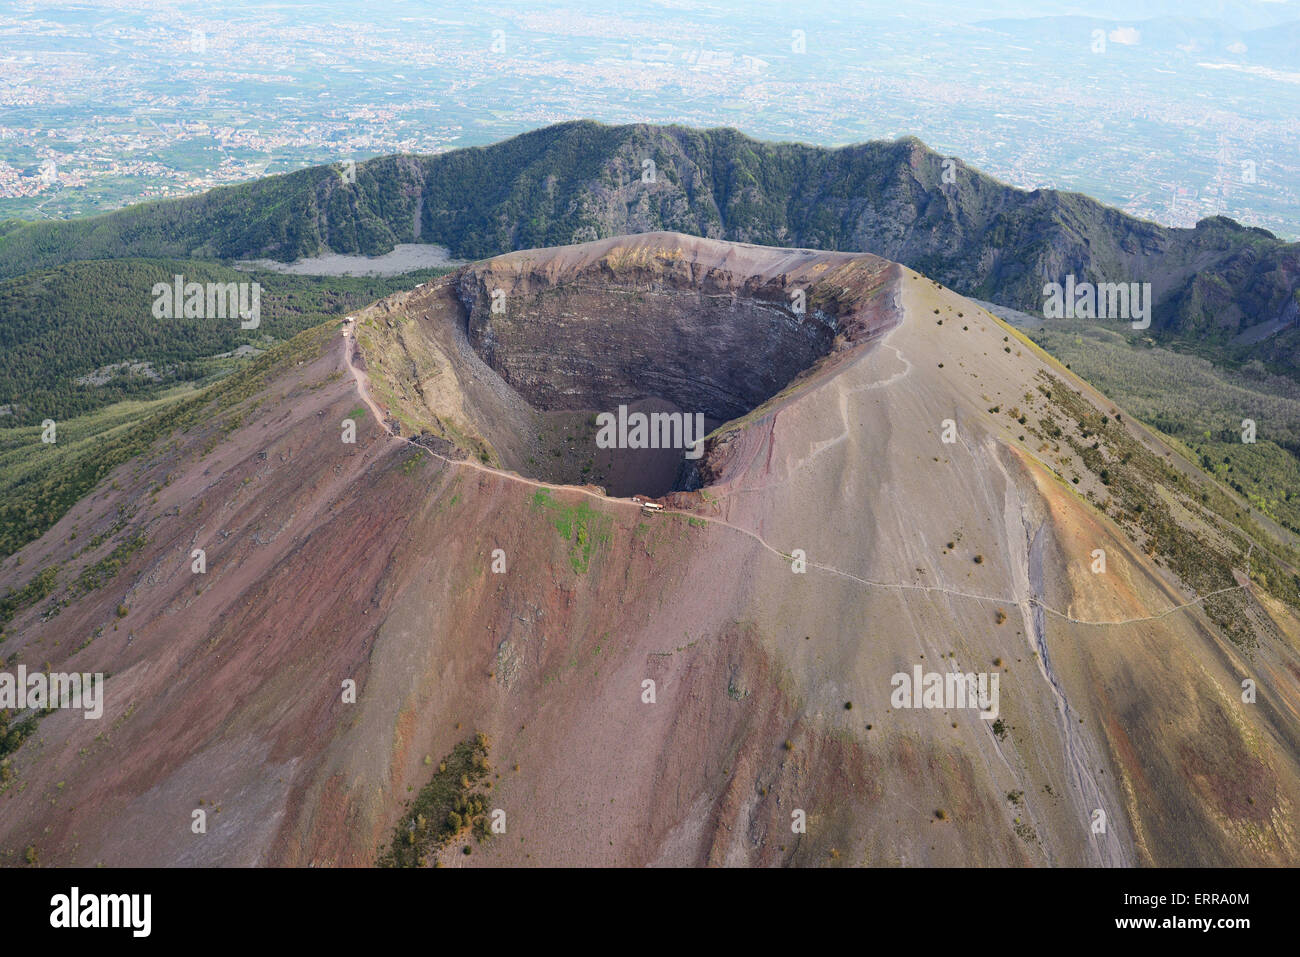 VUE AÉRIENNE.Cratère du Vésuve (altitude: 1281m), Mont Somma (altitude: 1132m) debout derrière.Entre Naples et Pompéi, Campanie, Italie. Banque D'Images